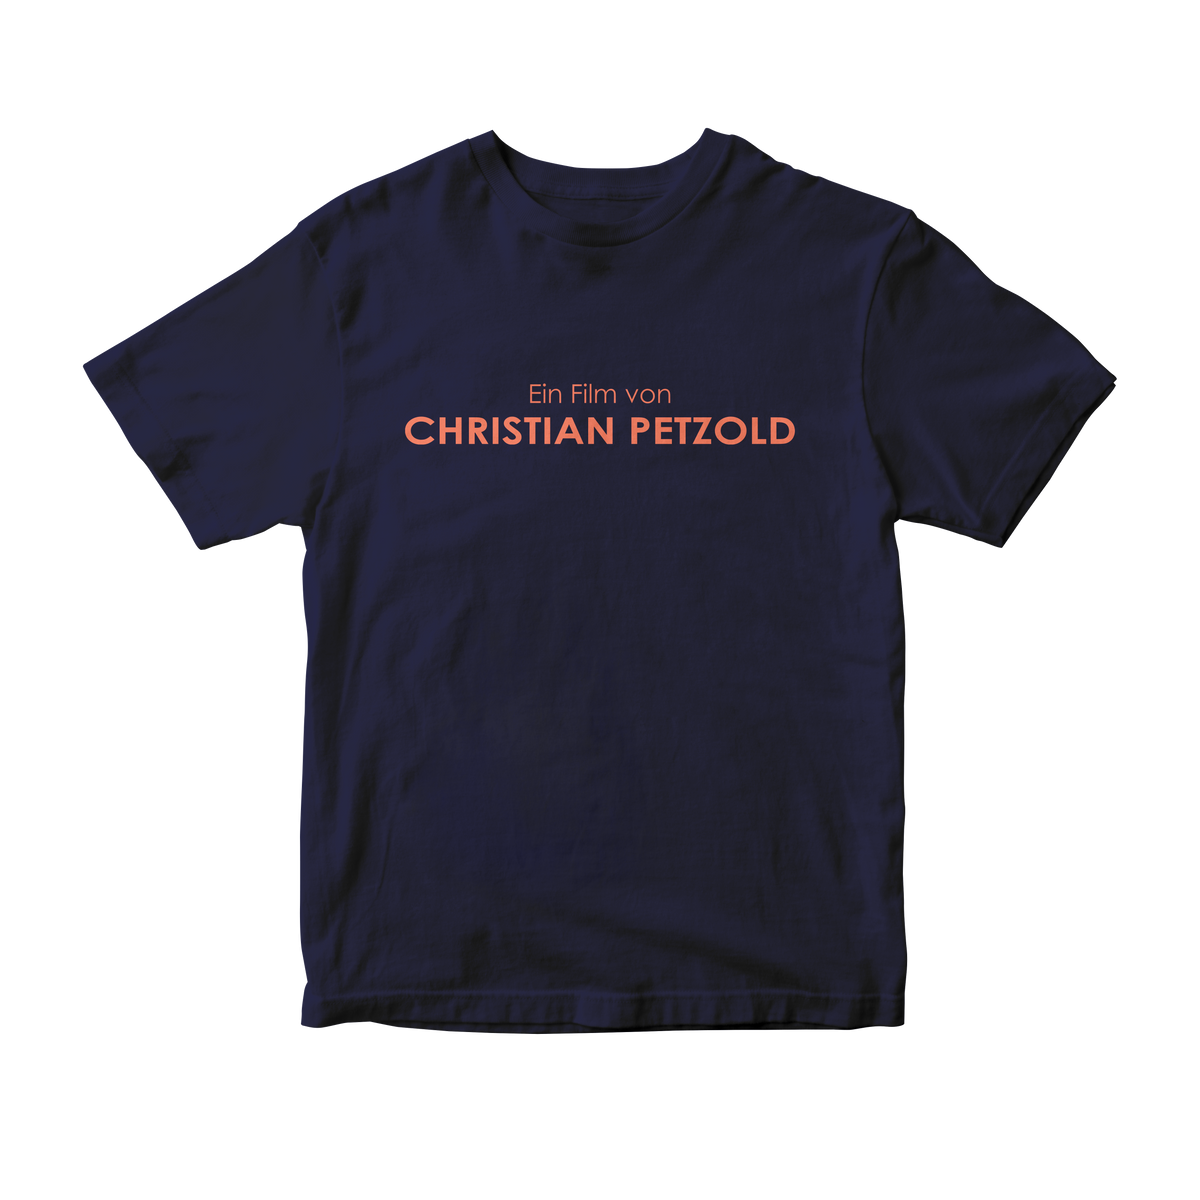 Nome do produto: Camiseta Ein Film von Christian Petzold